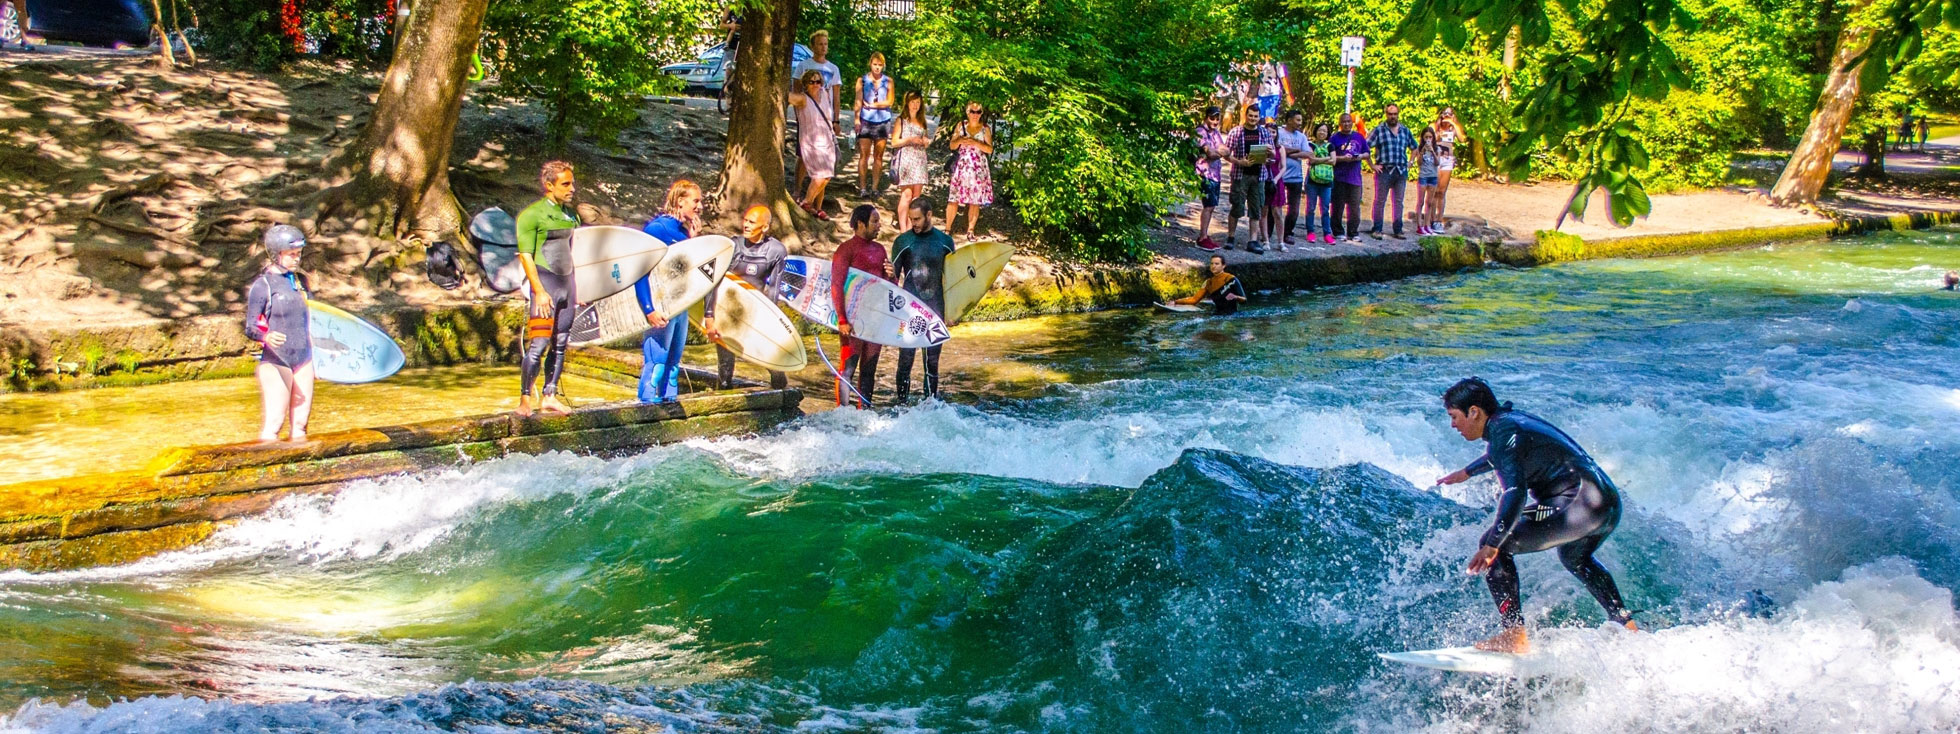 Englischer Garten München Inspirierend Surfen Wellenreiten Eisbach In München Das Offizielle